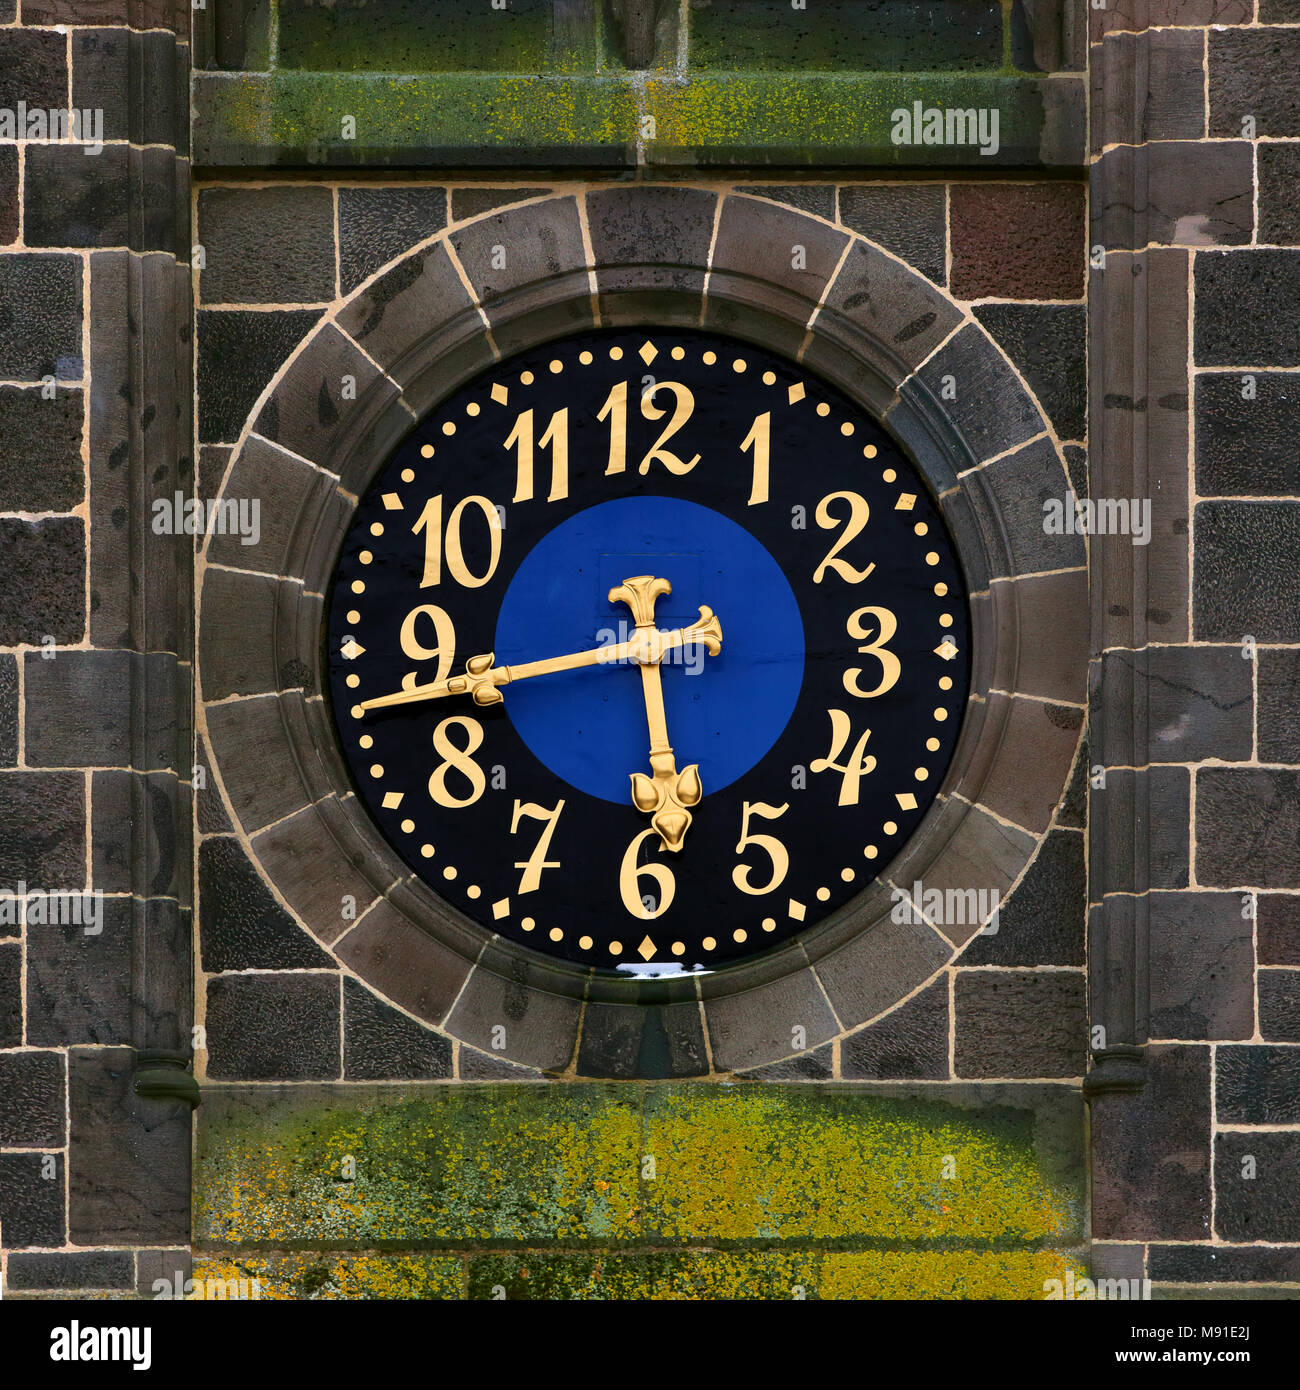 Clock at Dankeskirche (Church of Praise) in Bad Nauheim, Germany Stock Photo